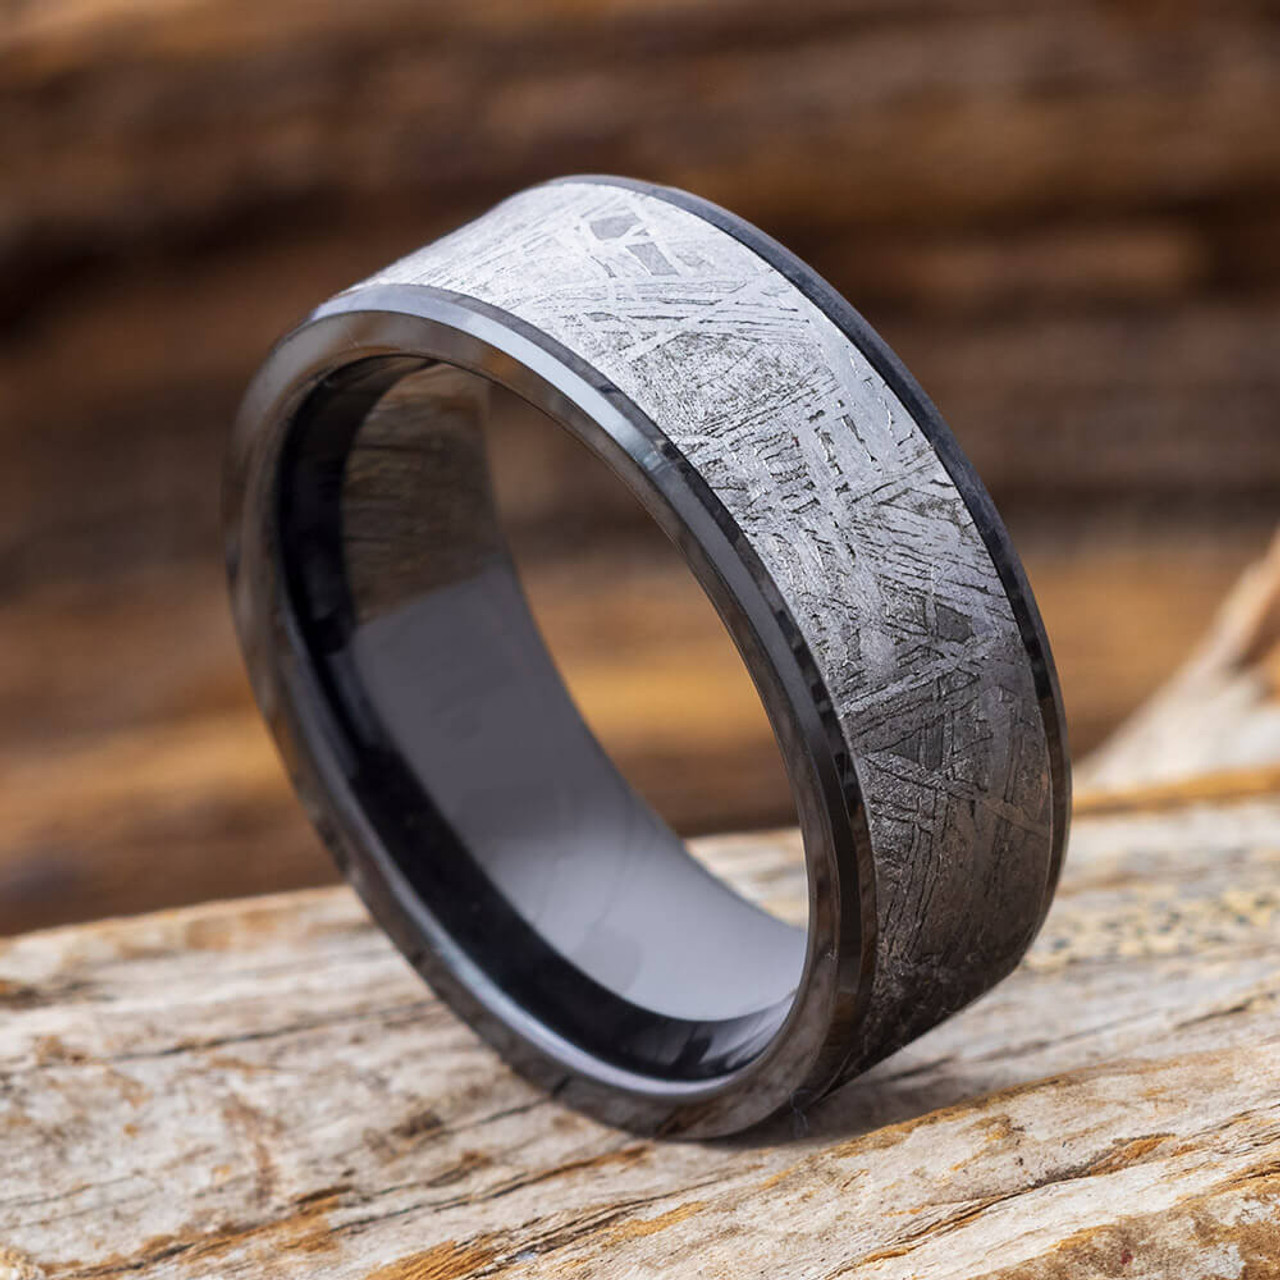 Meteorite and Cobalt Chrome Wedding Ring — Unique Titanium Wedding Rings